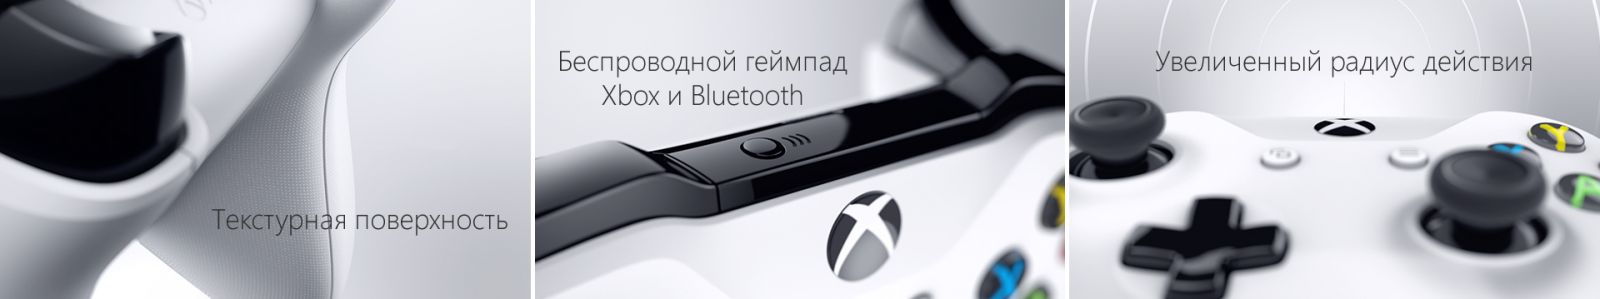 Xbox One S 2TB image7